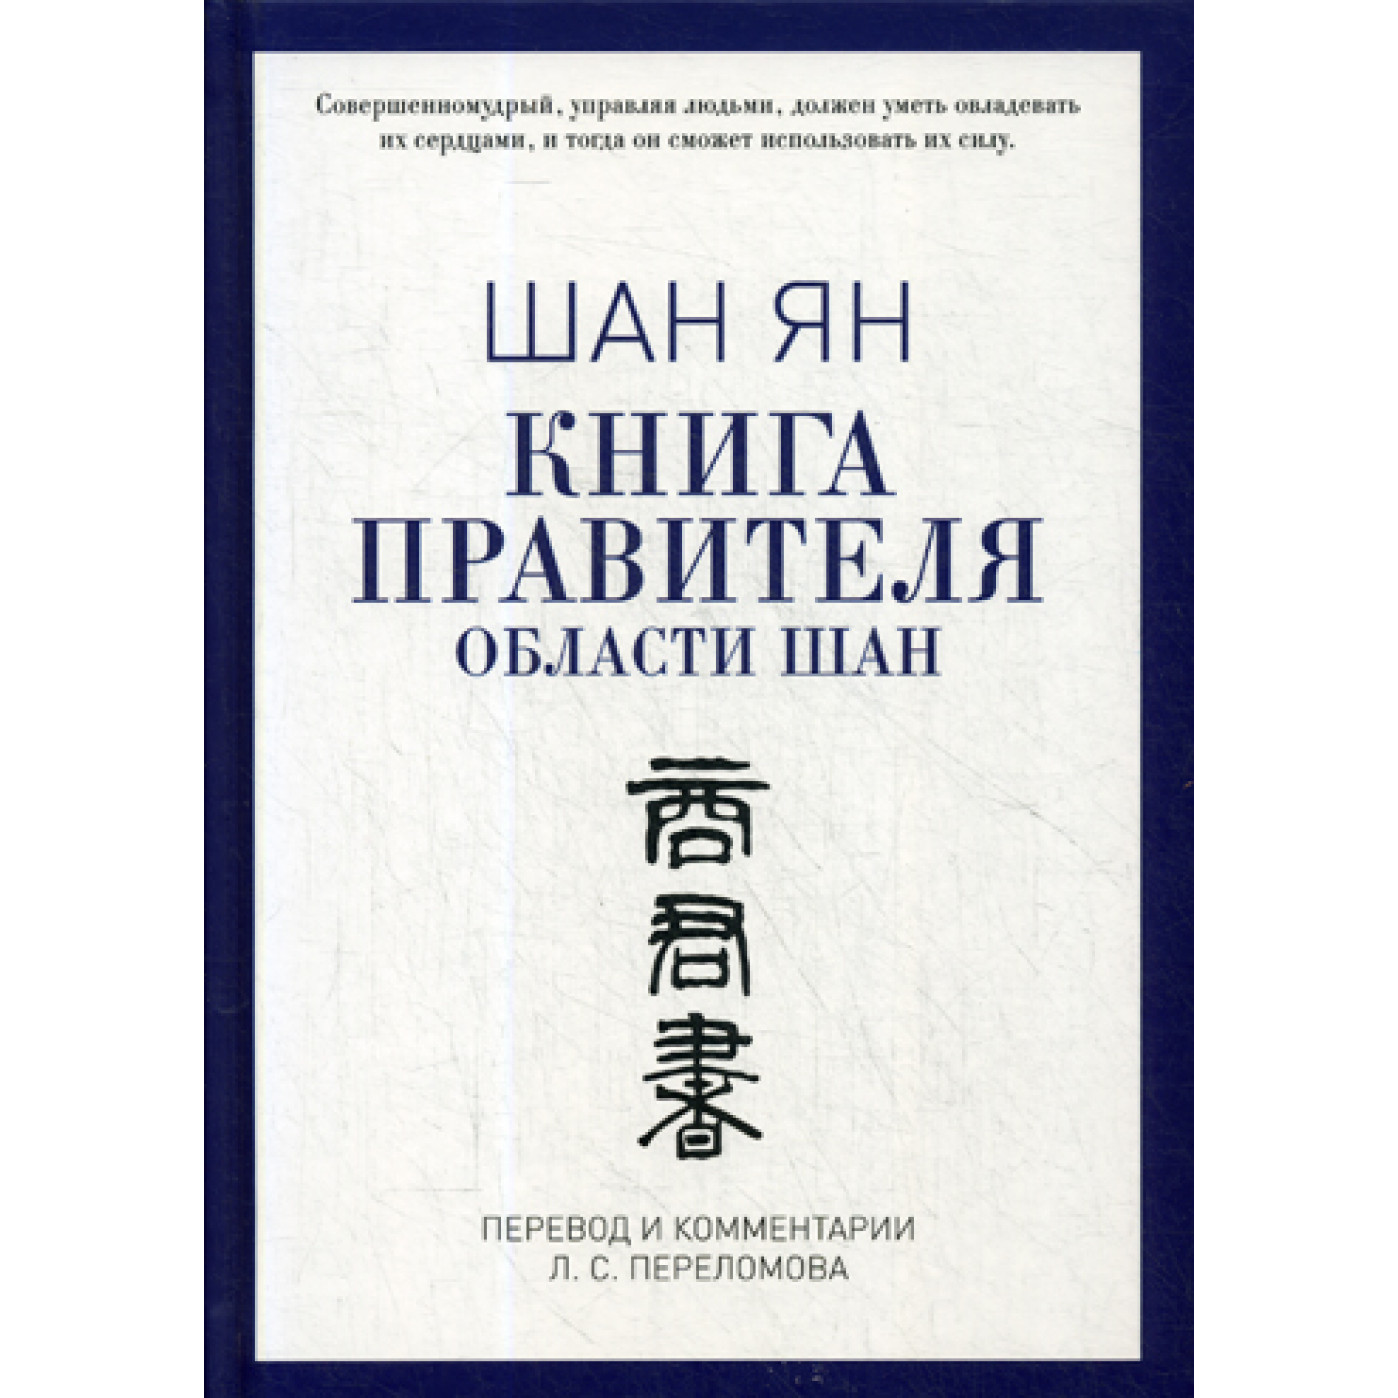 Книга правителя области Шан. Шан Ян